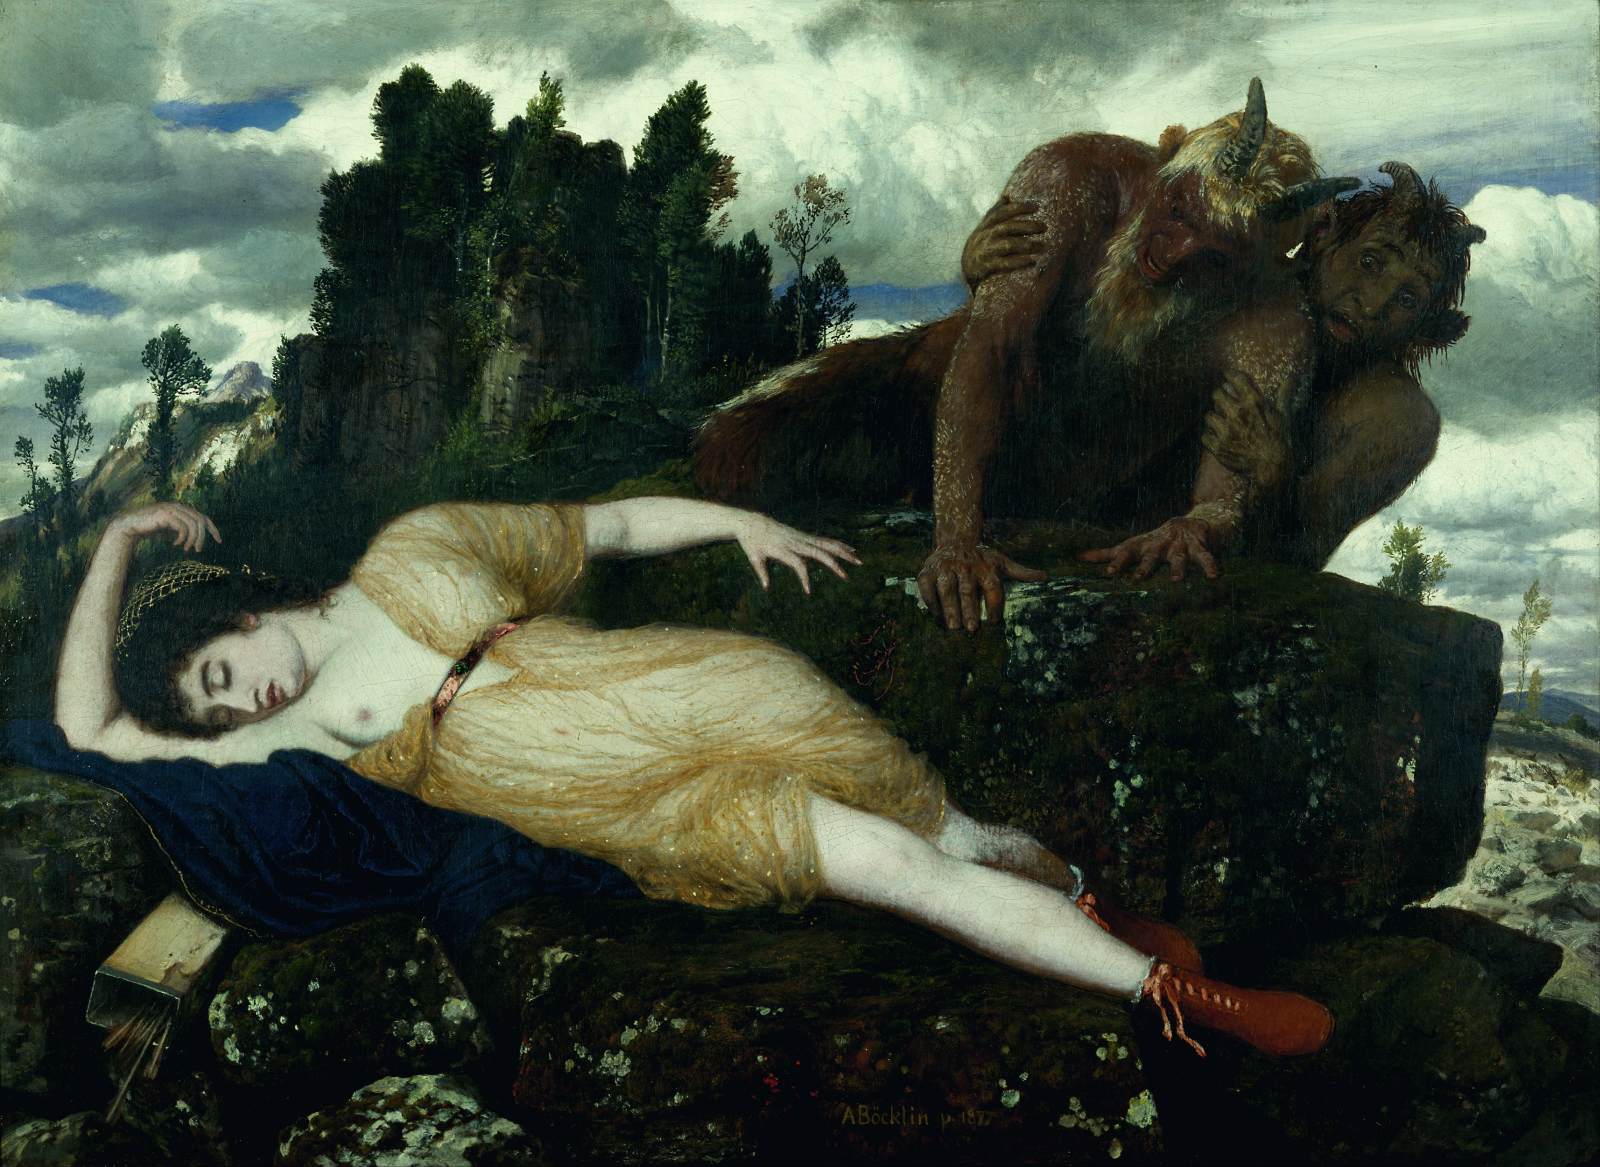 Diana sovende observeret af to faunoer